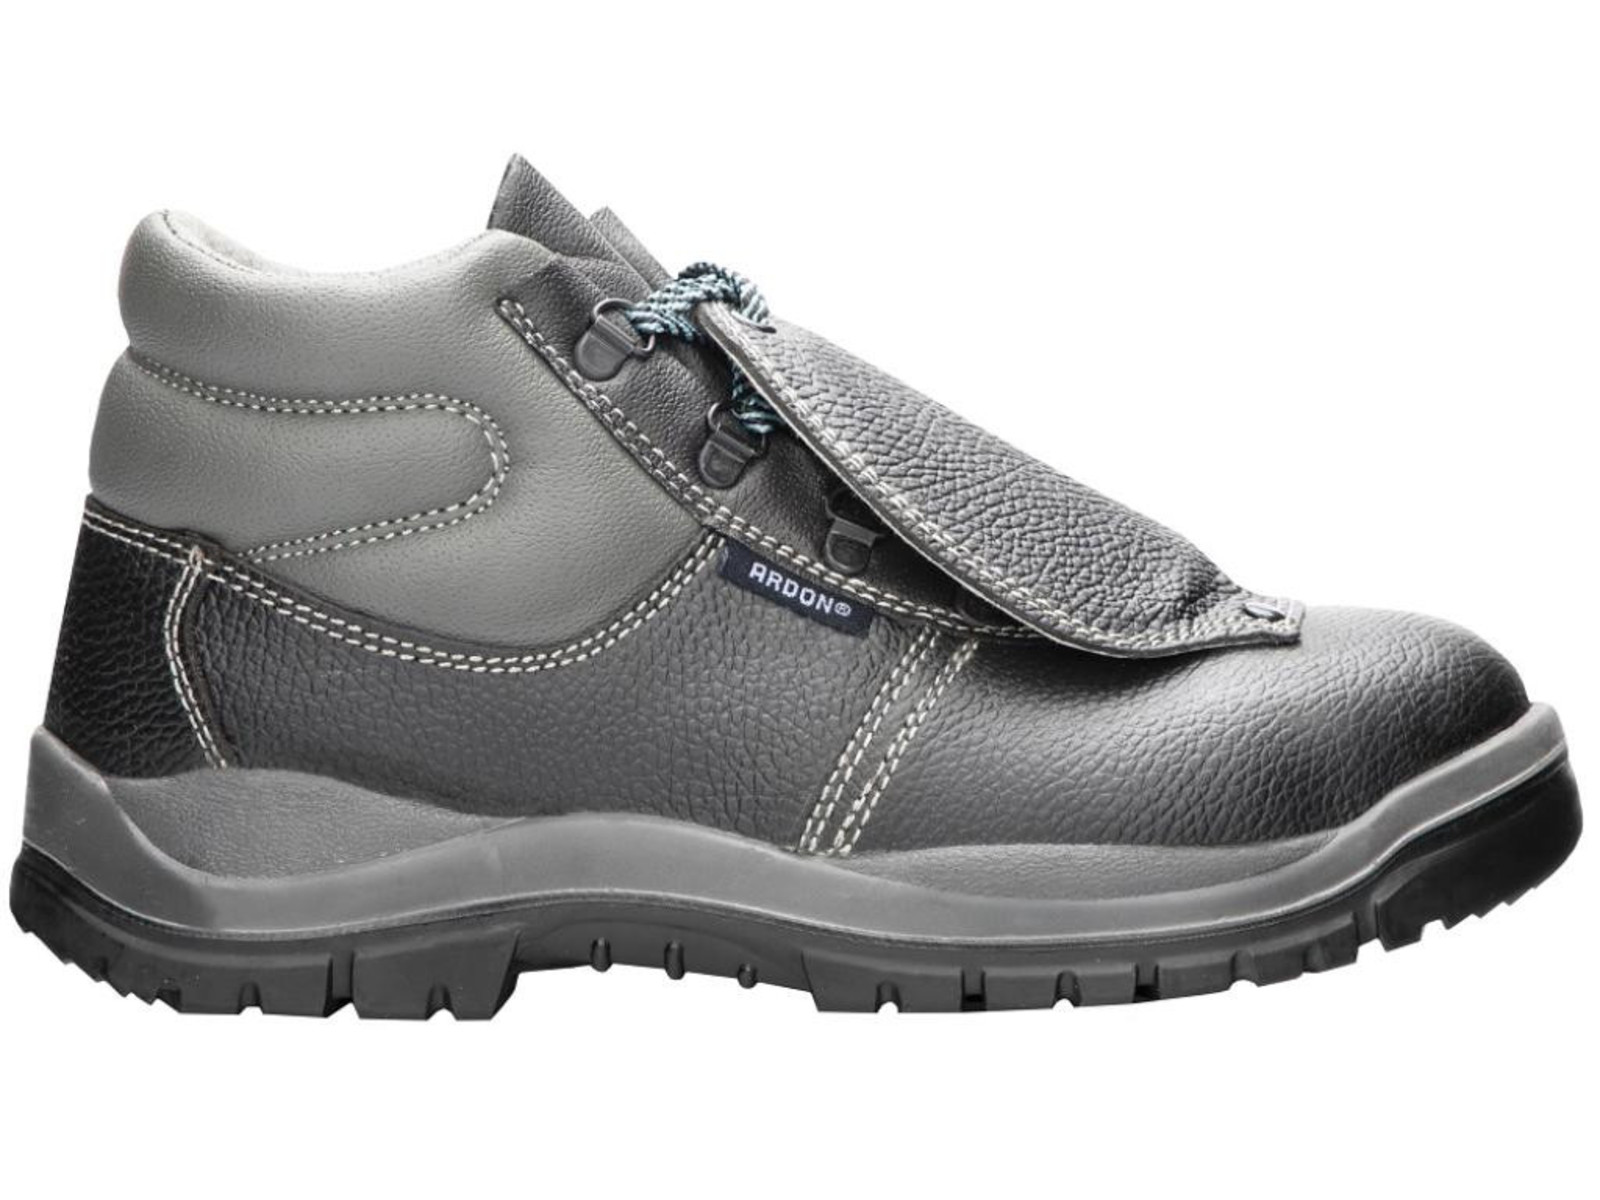 Bezpečnostná obuv ARDON® Integral S1P - veľkosť: 44, farba: sivá/čierna